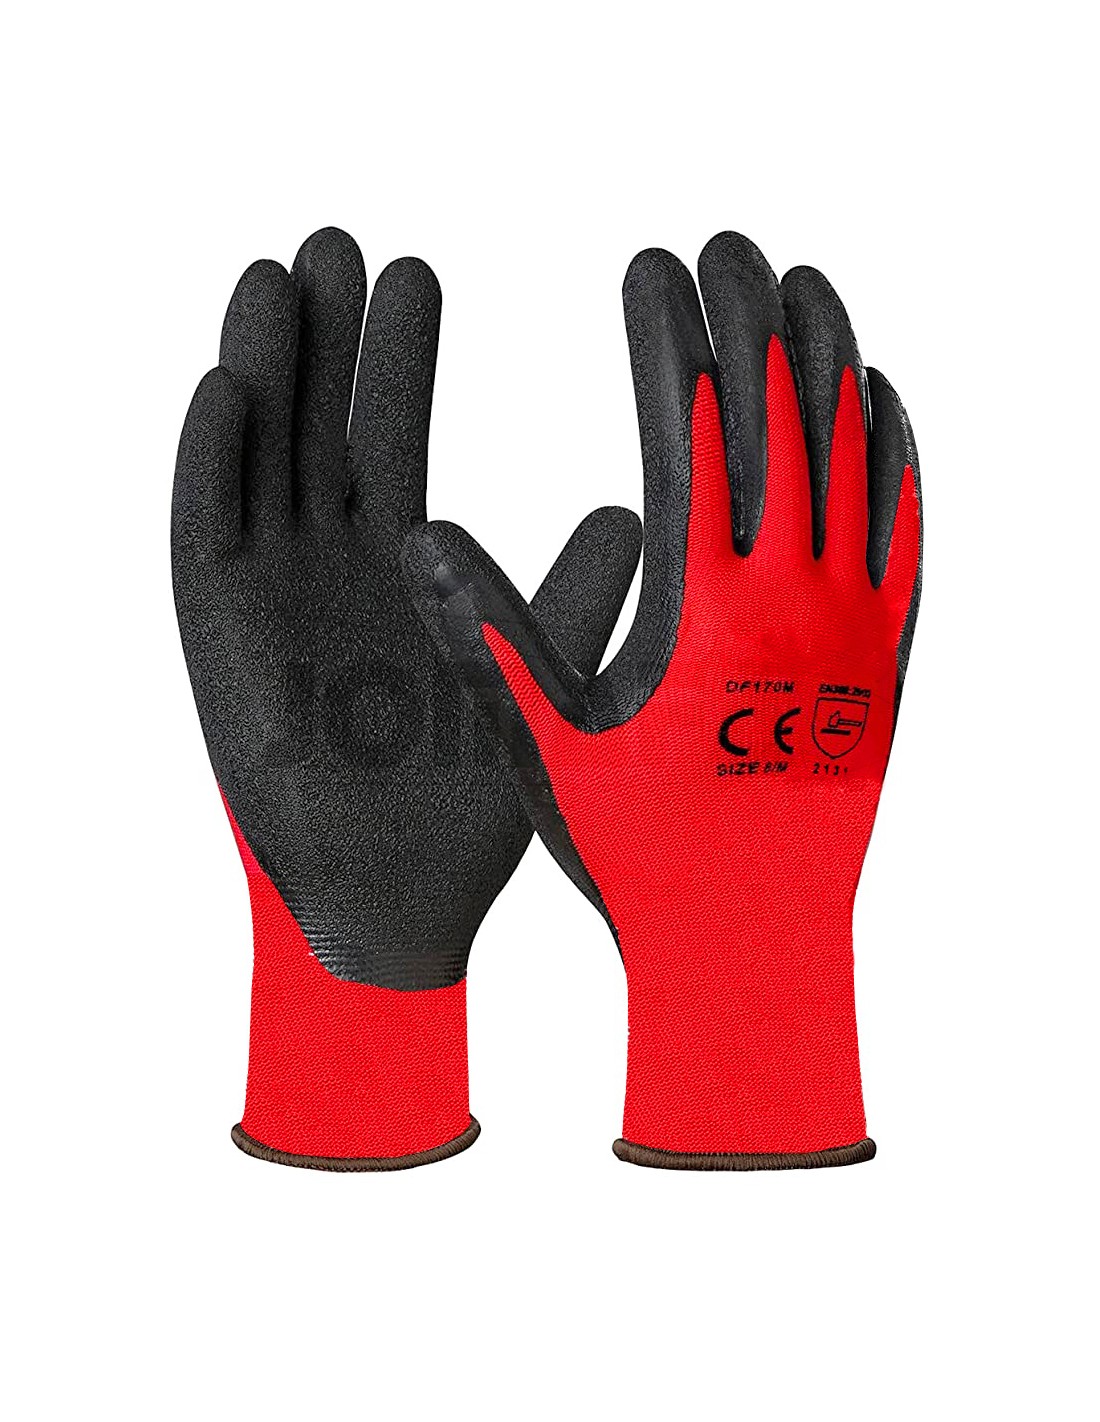 Guantes de trabajo reutilizables de nitrilo, guantes de trabajo multiusos  con palma resistente a cortes